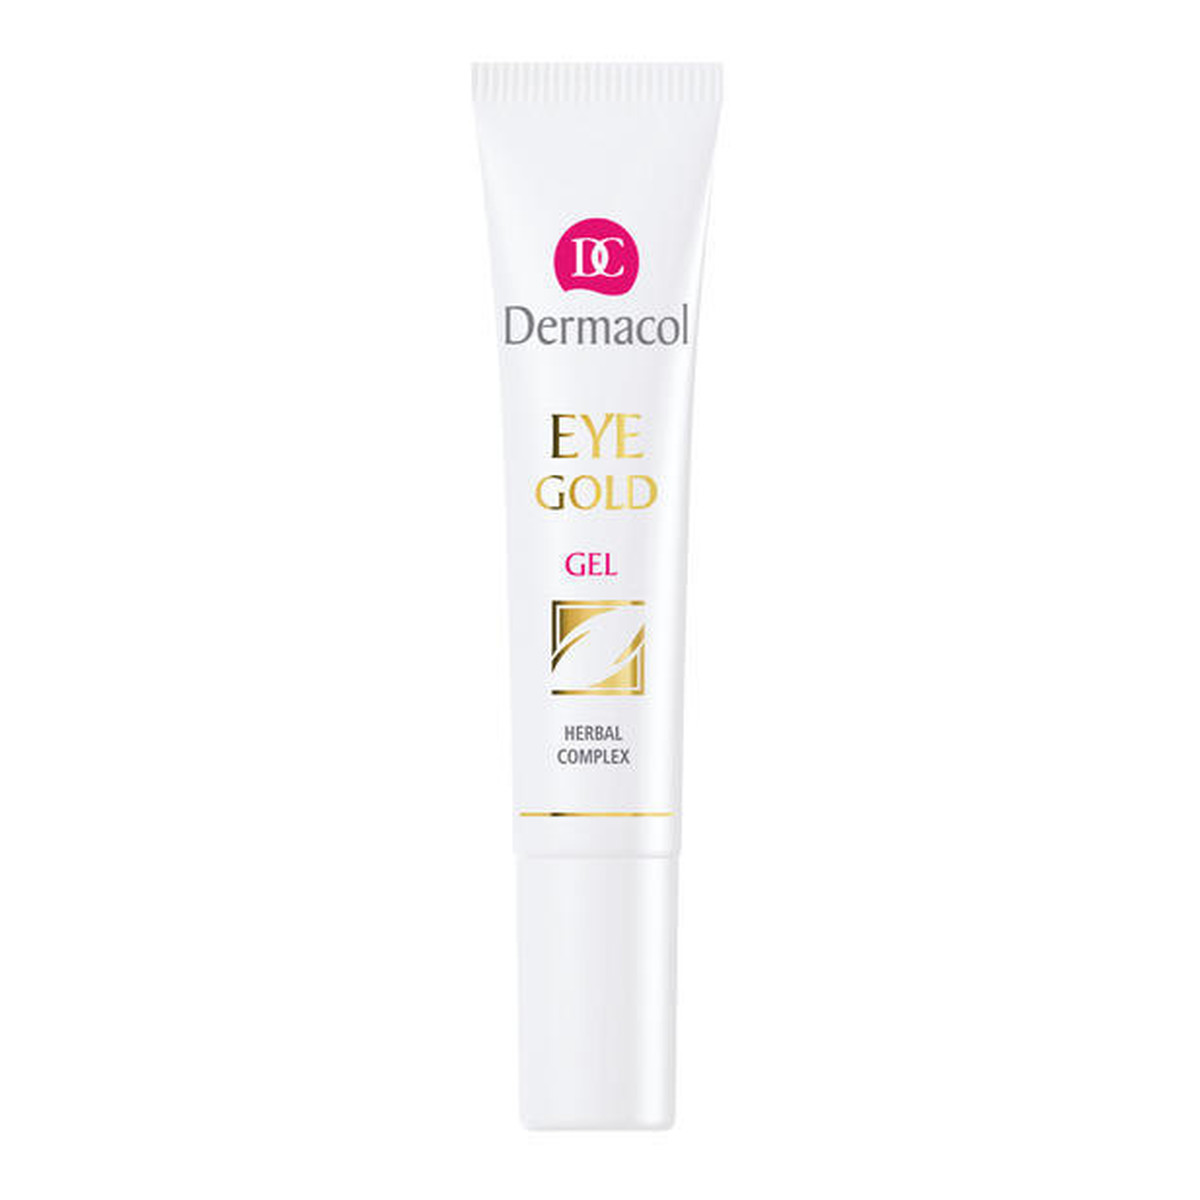 Dermacol Refreshing Eye Gold odświeżający żel redukujący cienie pod oczami 15ml